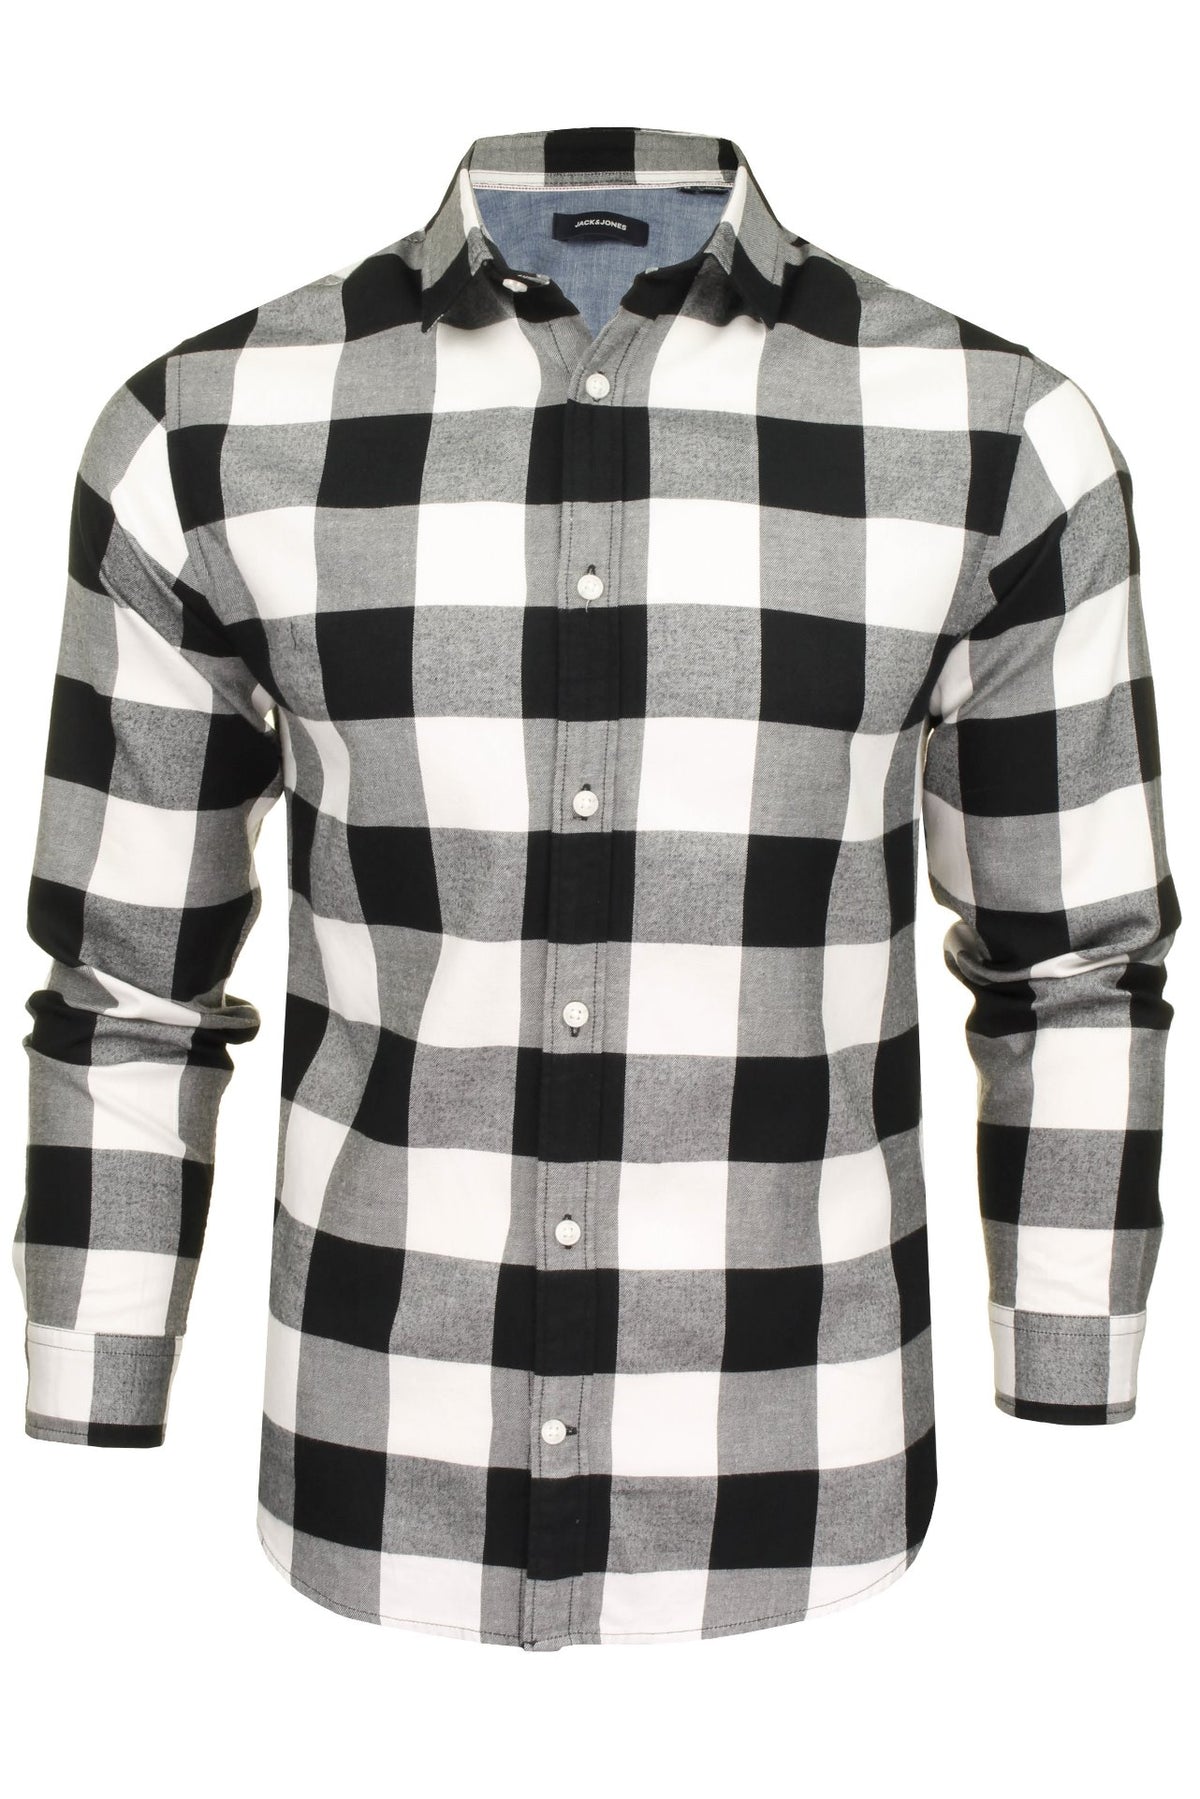 Jack & Jones Men's 'Gingham' Check Twill Shirt - Long Sleeved, 01, 12181602, Whisper White